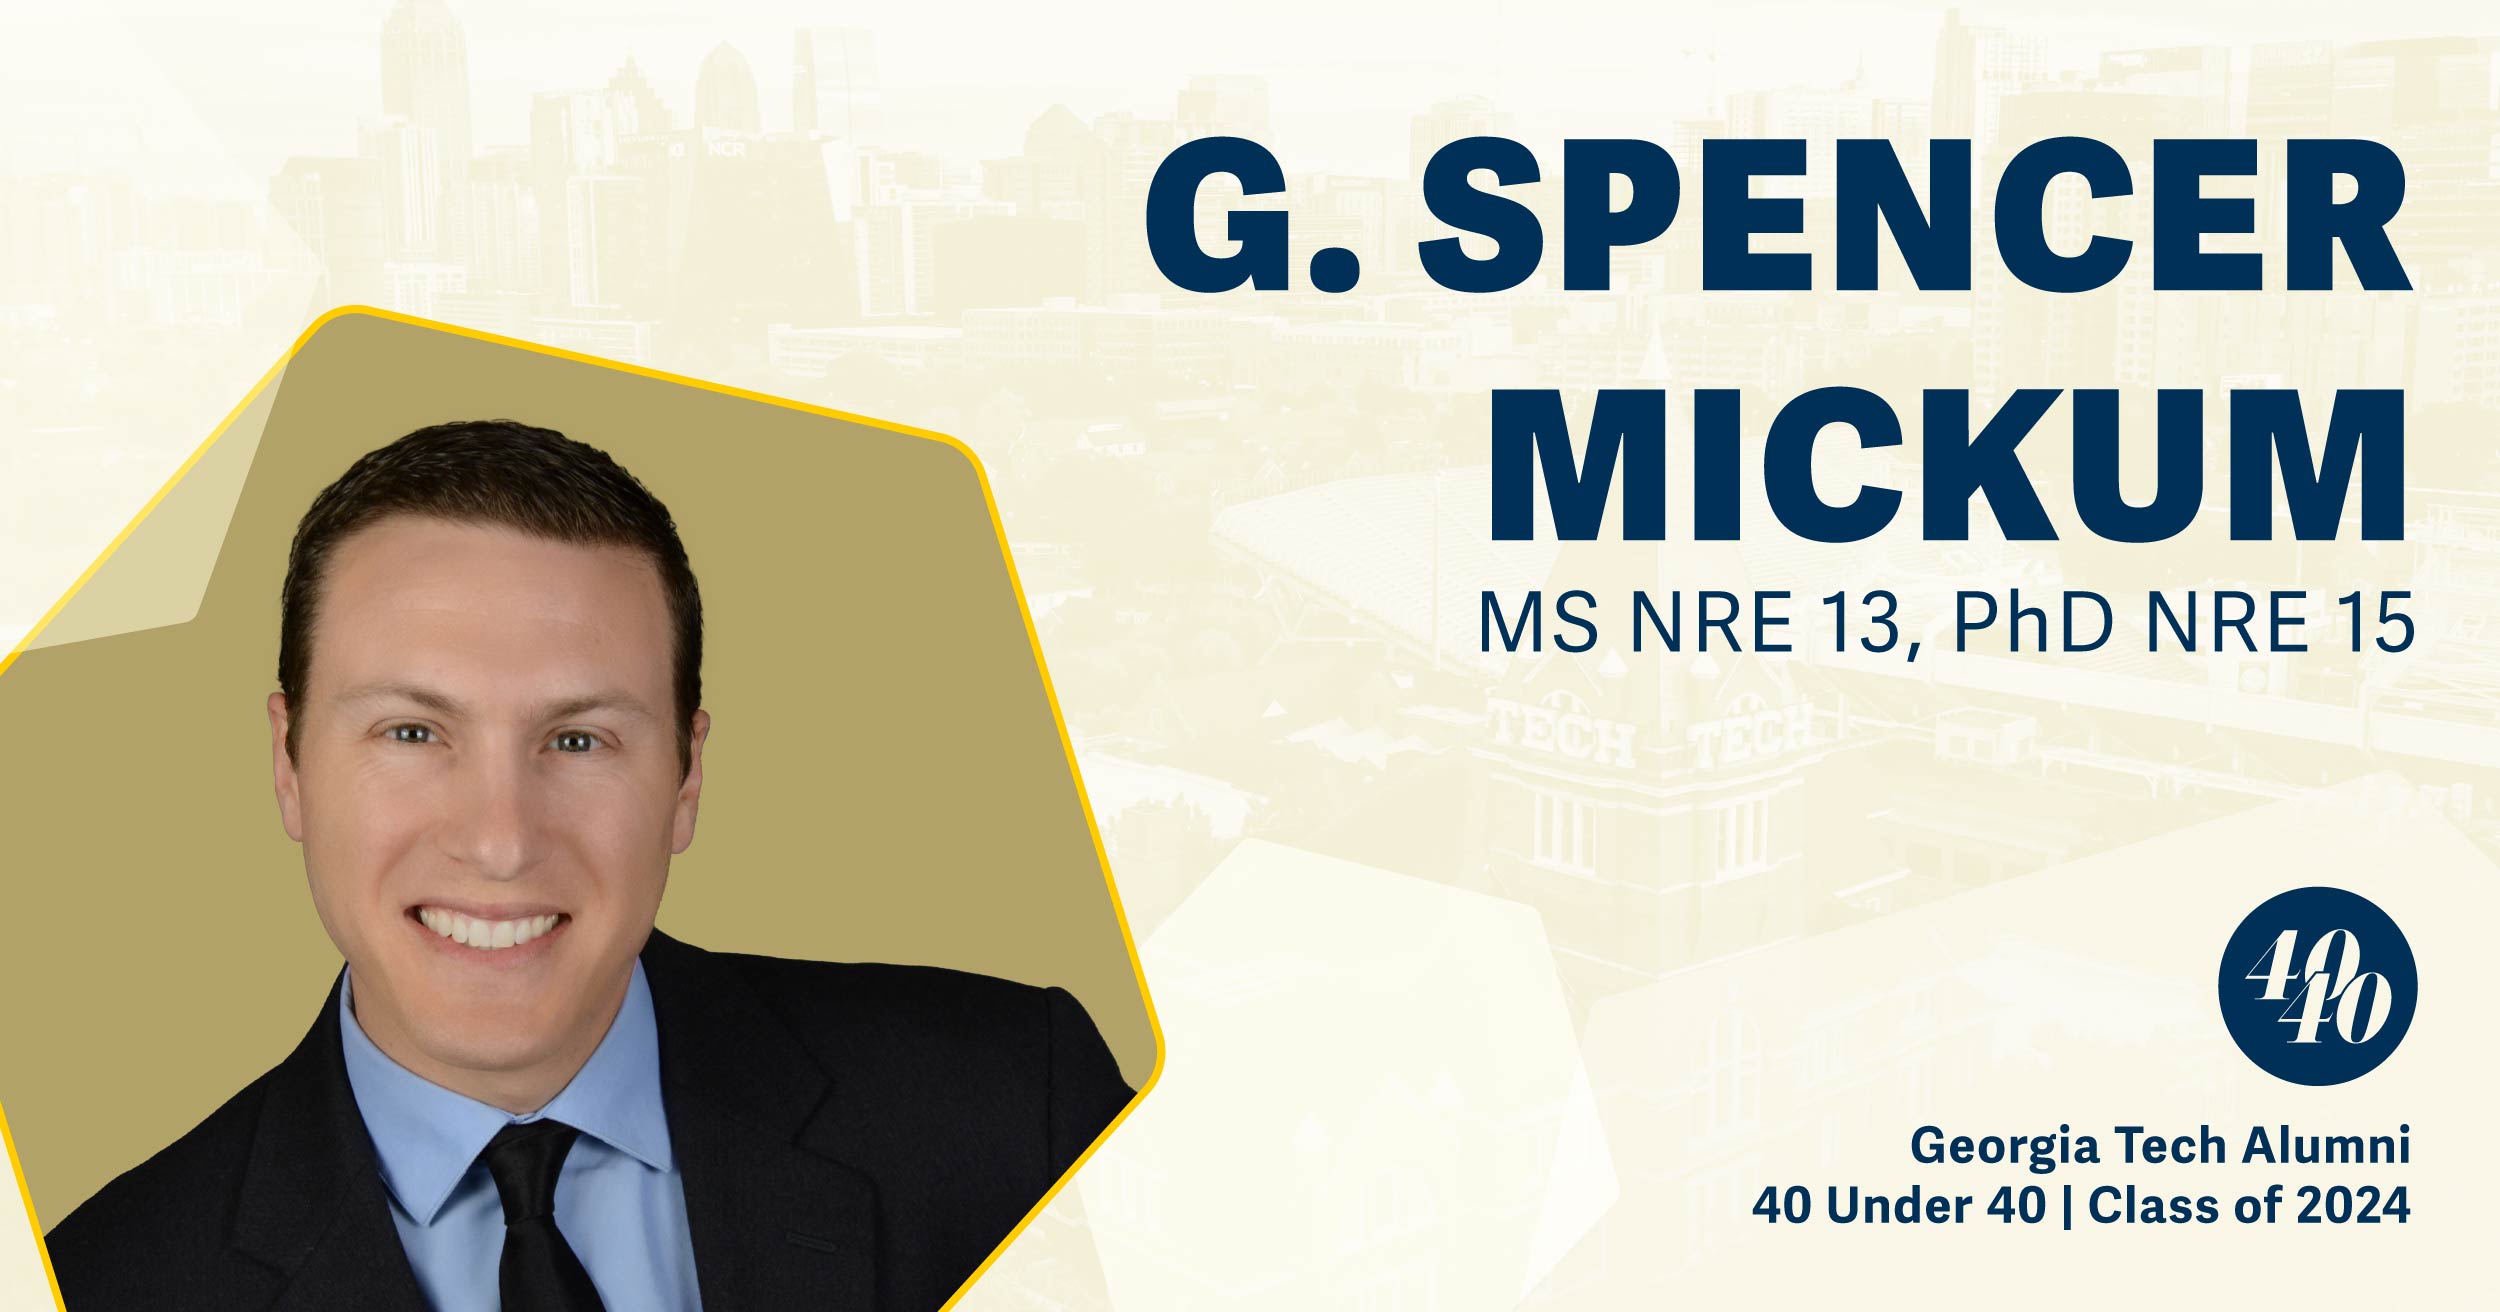 G. Spencer Mickum, M.S. NRE 2013, Ph.D. NRE 2015